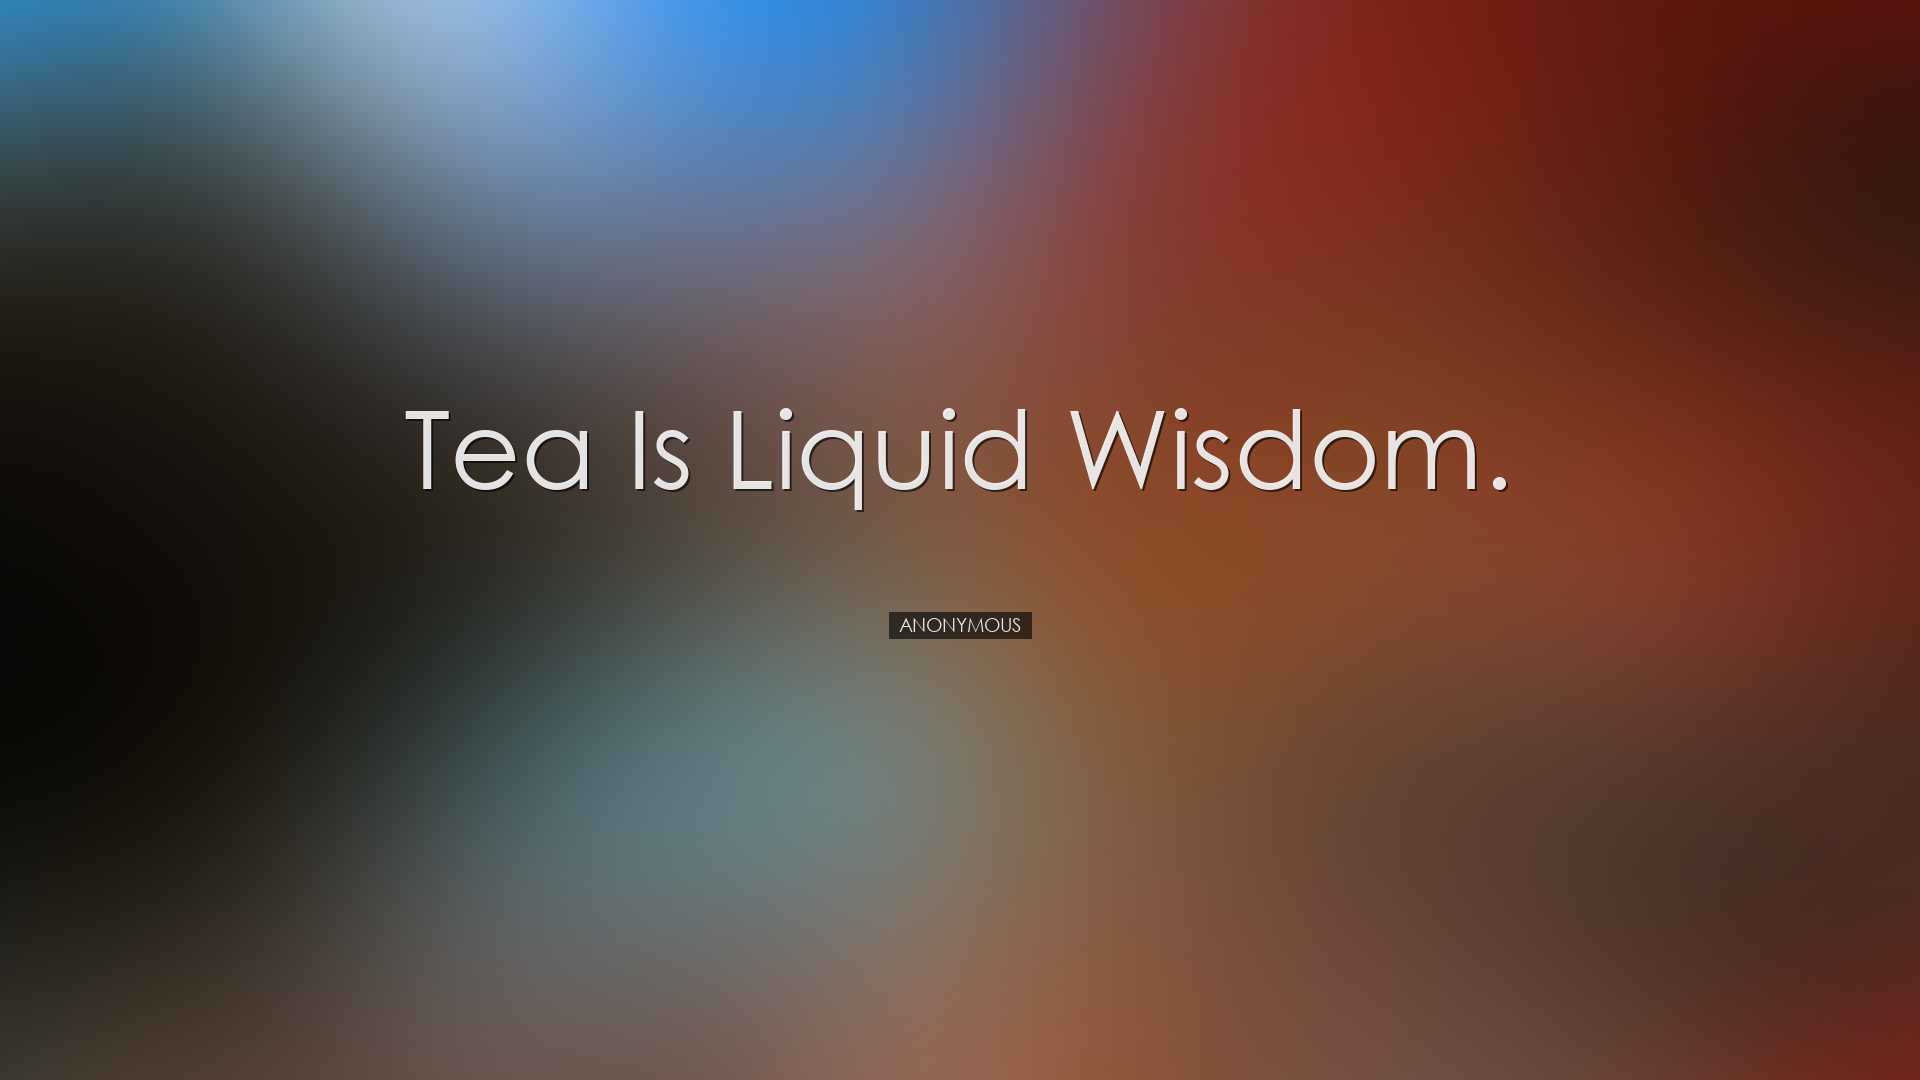 Tea is liquid wisdom. - Anonymous